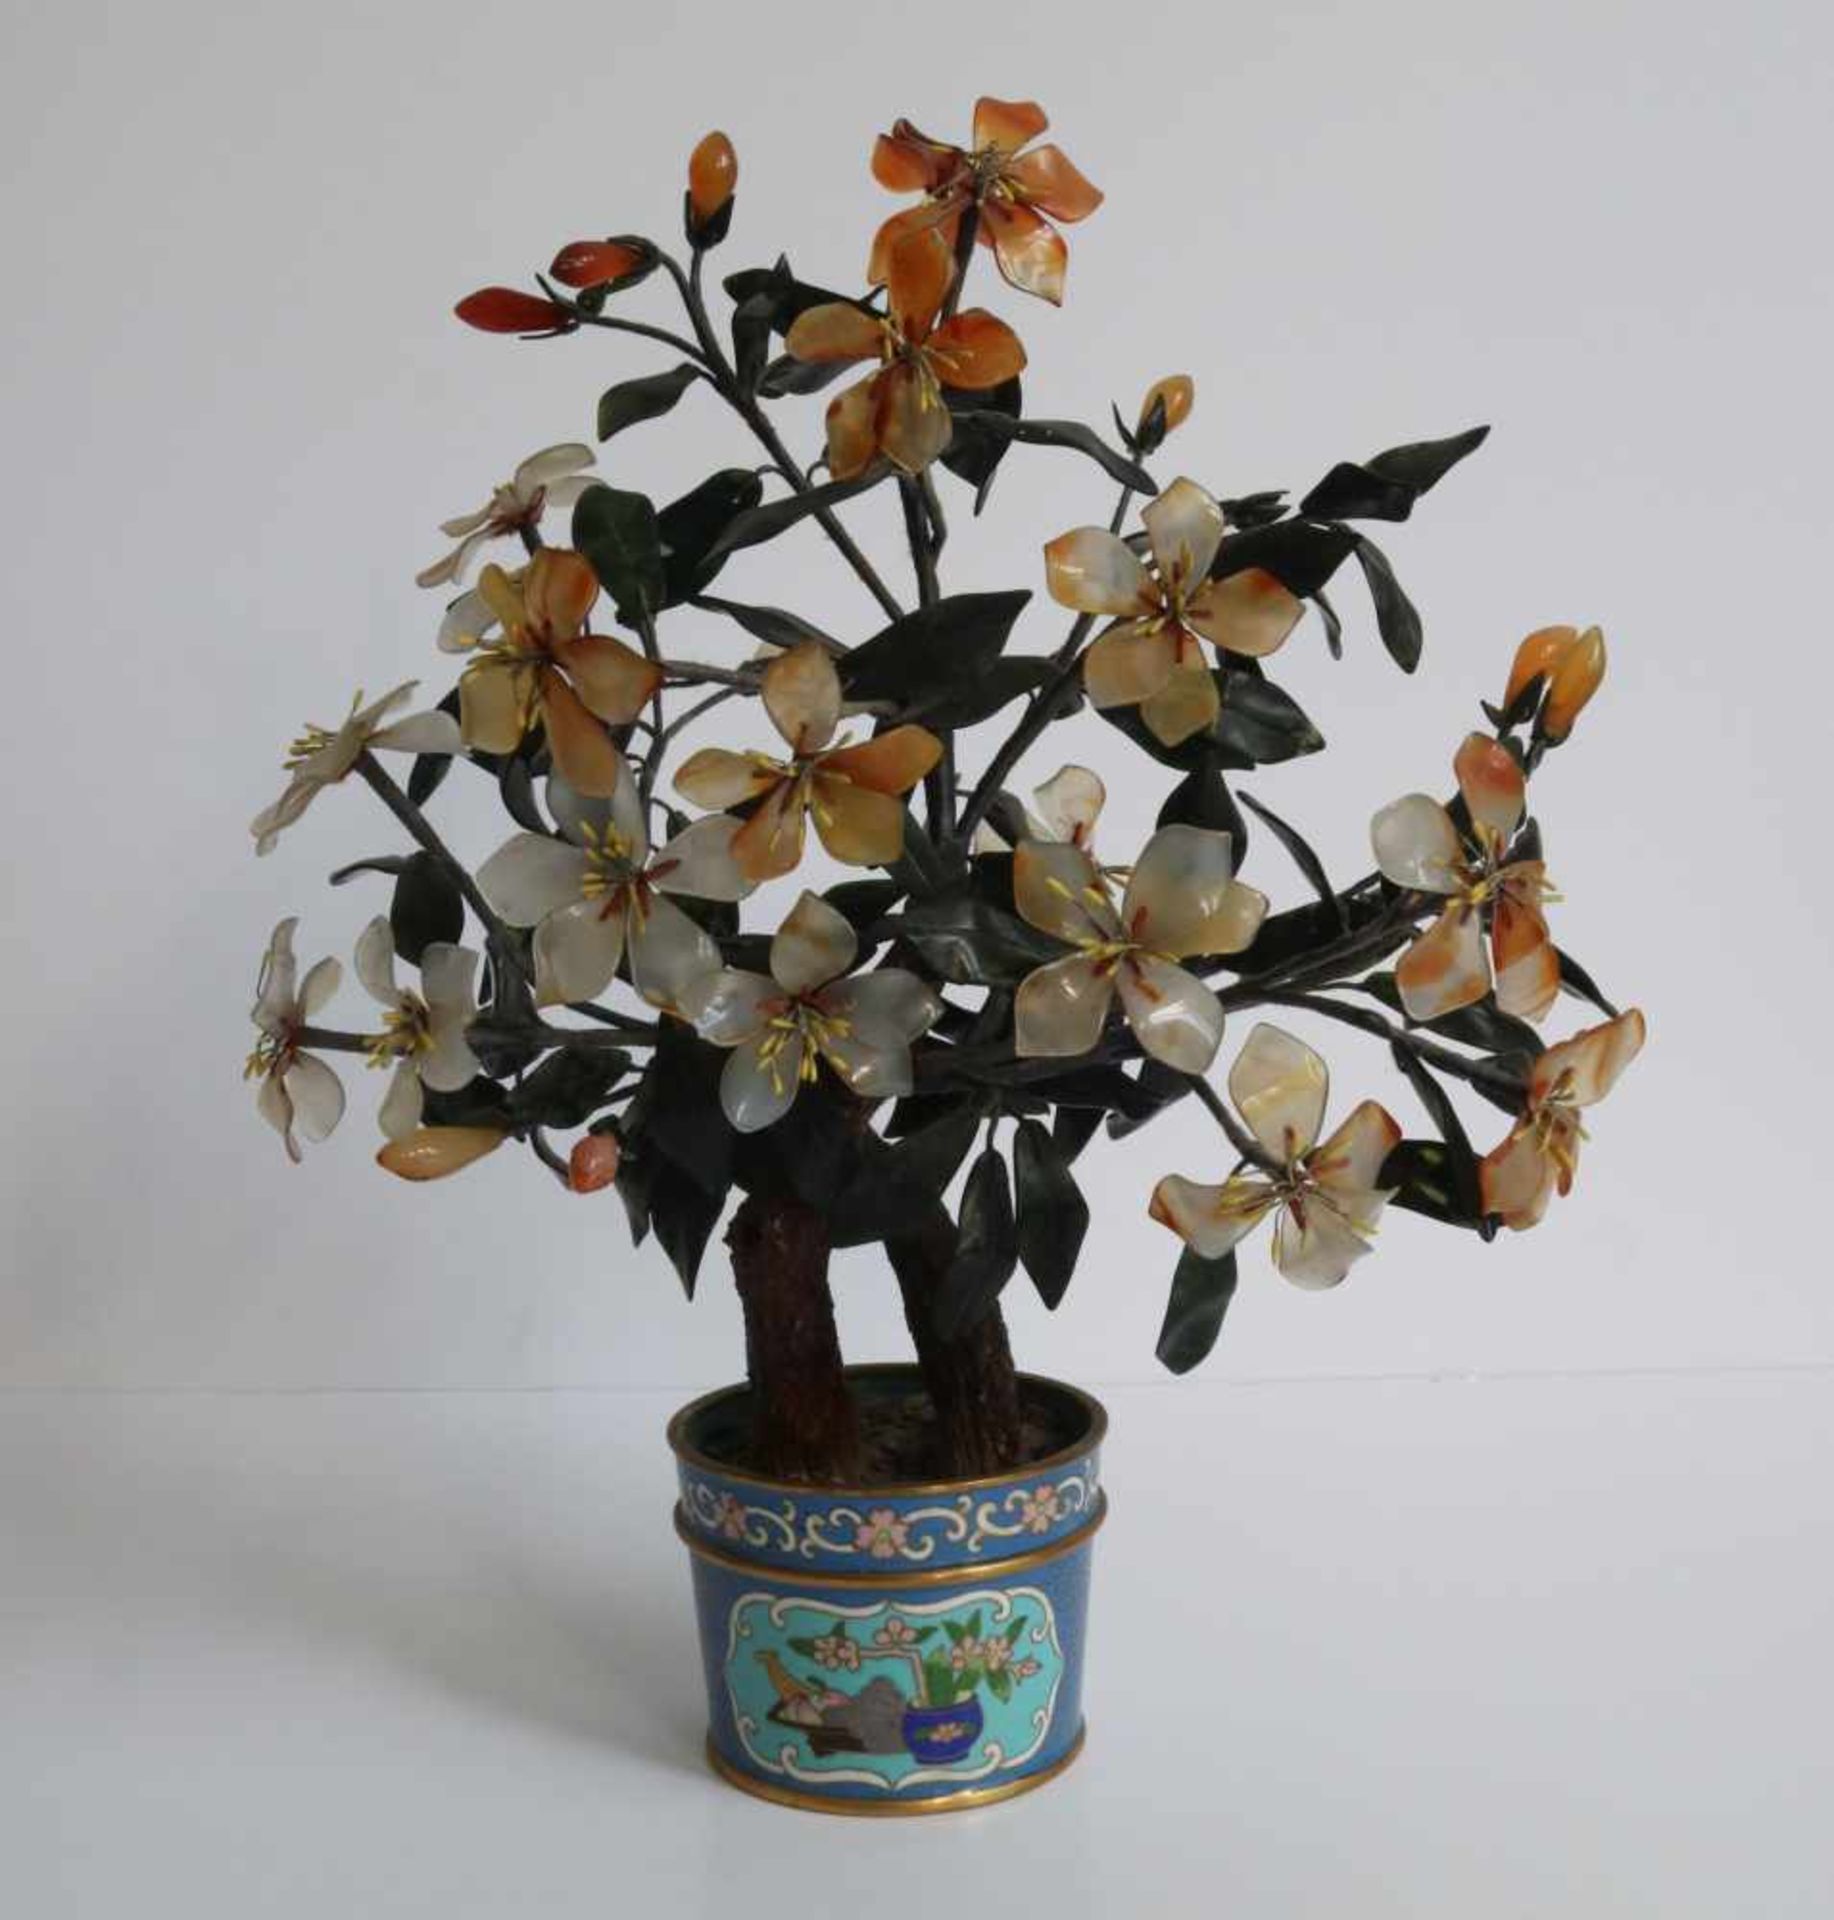 Chinese cloisonné cloisonné pot with flowers (glass) H 37 cm